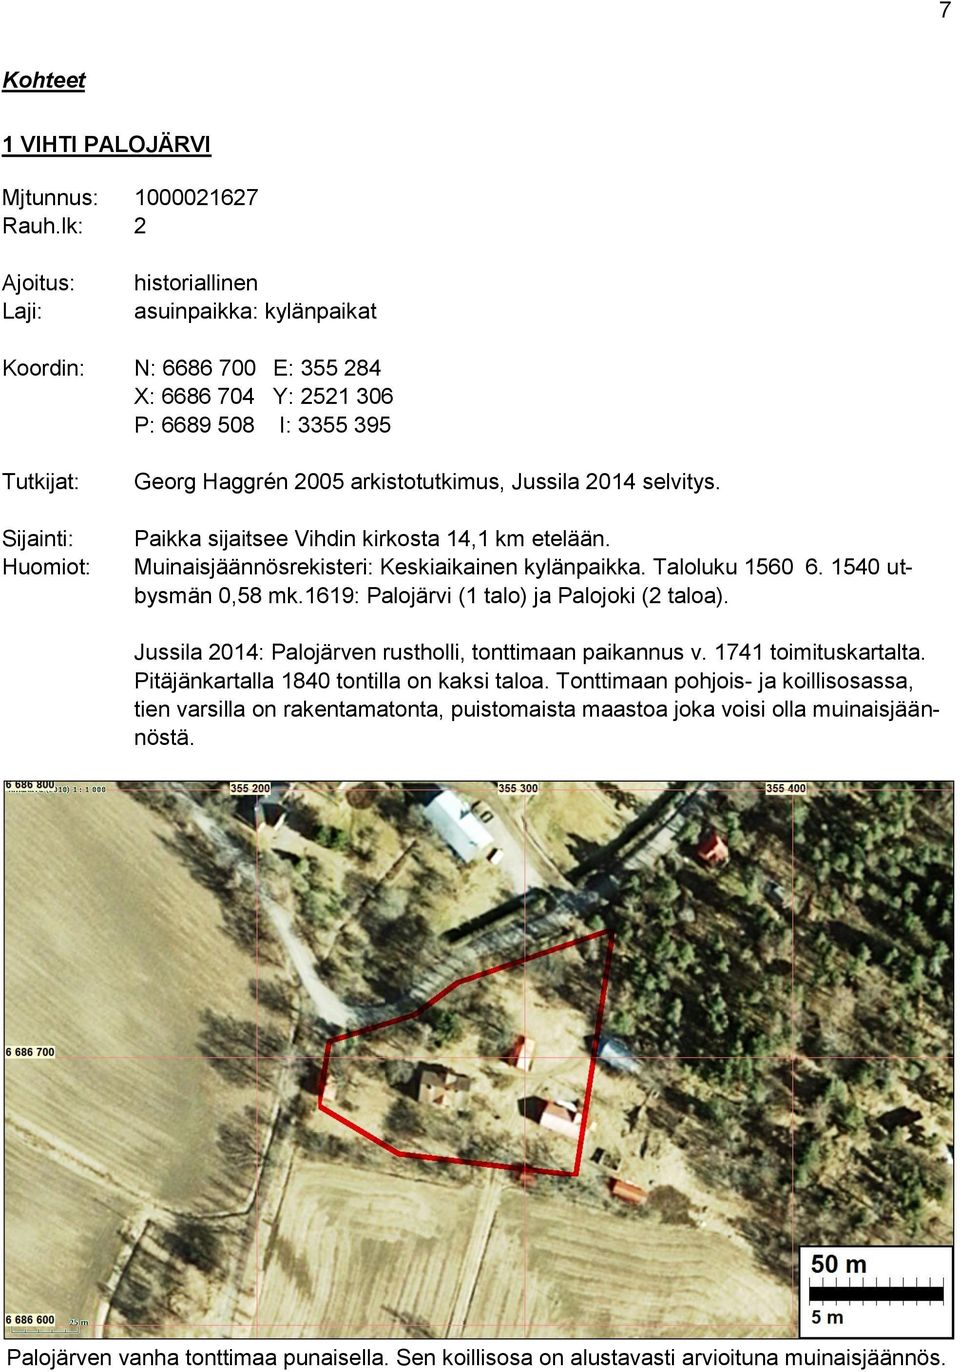 selvitys. Paikka sijaitsee Vihdin kirkosta 14,1 km etelään. Muinaisjäännösrekisteri: Keskiaikainen kylänpaikka. Taloluku 1560 6. 1540 utbysmän 0,58 mk.1619: Palojärvi (1 talo) ja Palojoki (2 taloa).